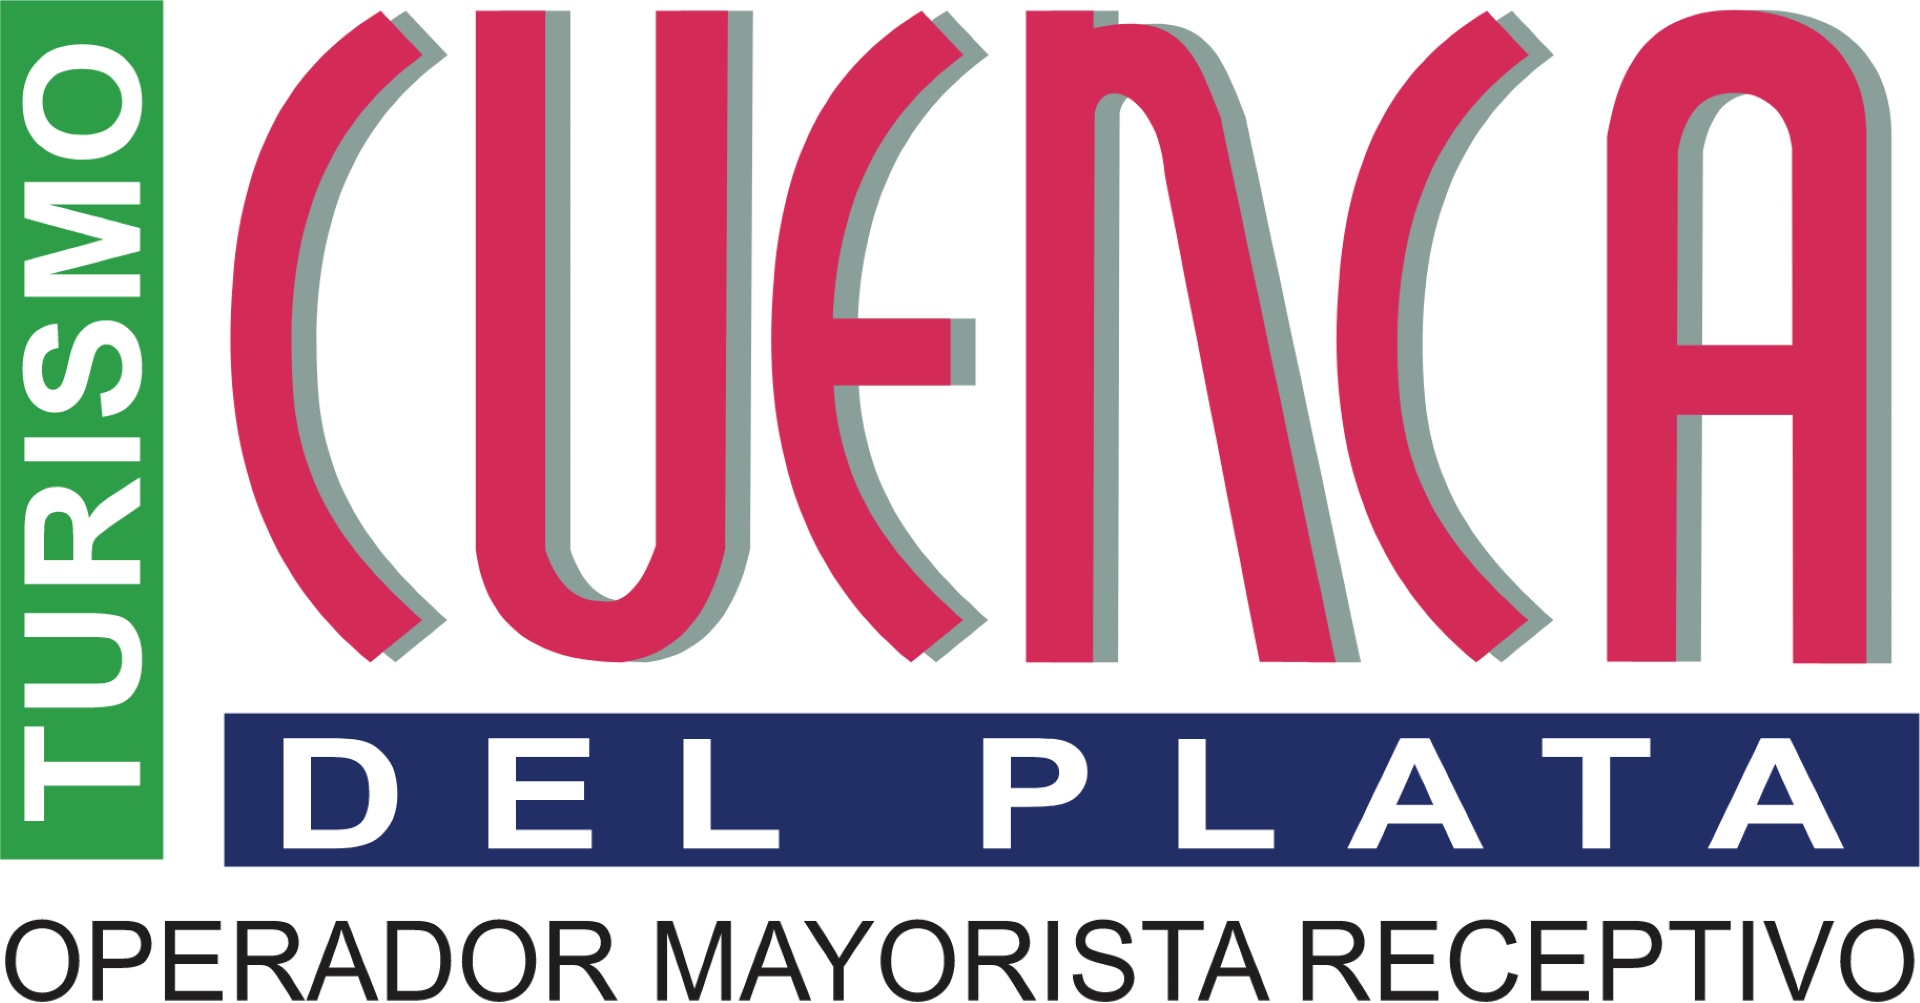 Cuenca del Plata logo